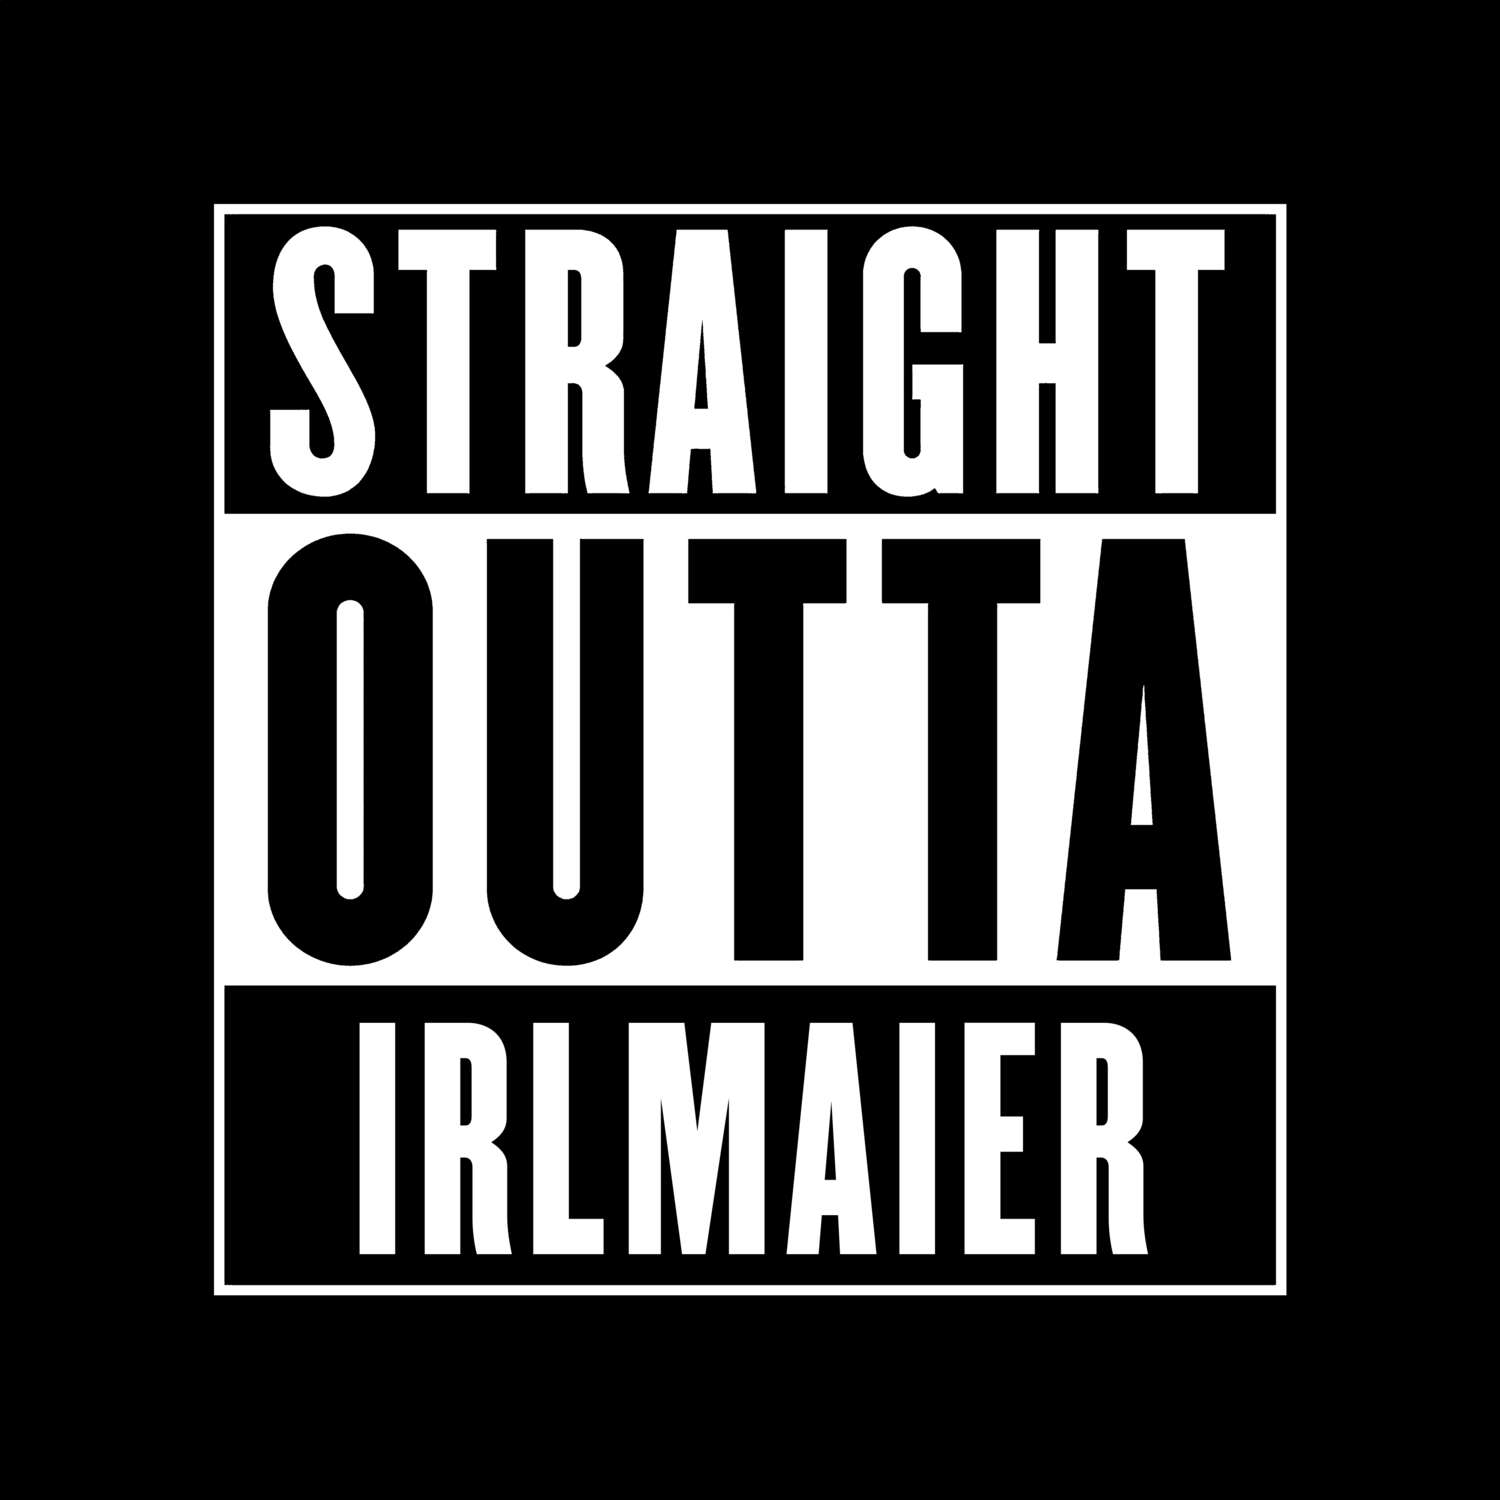 Irlmaier T-Shirt »Straight Outta«